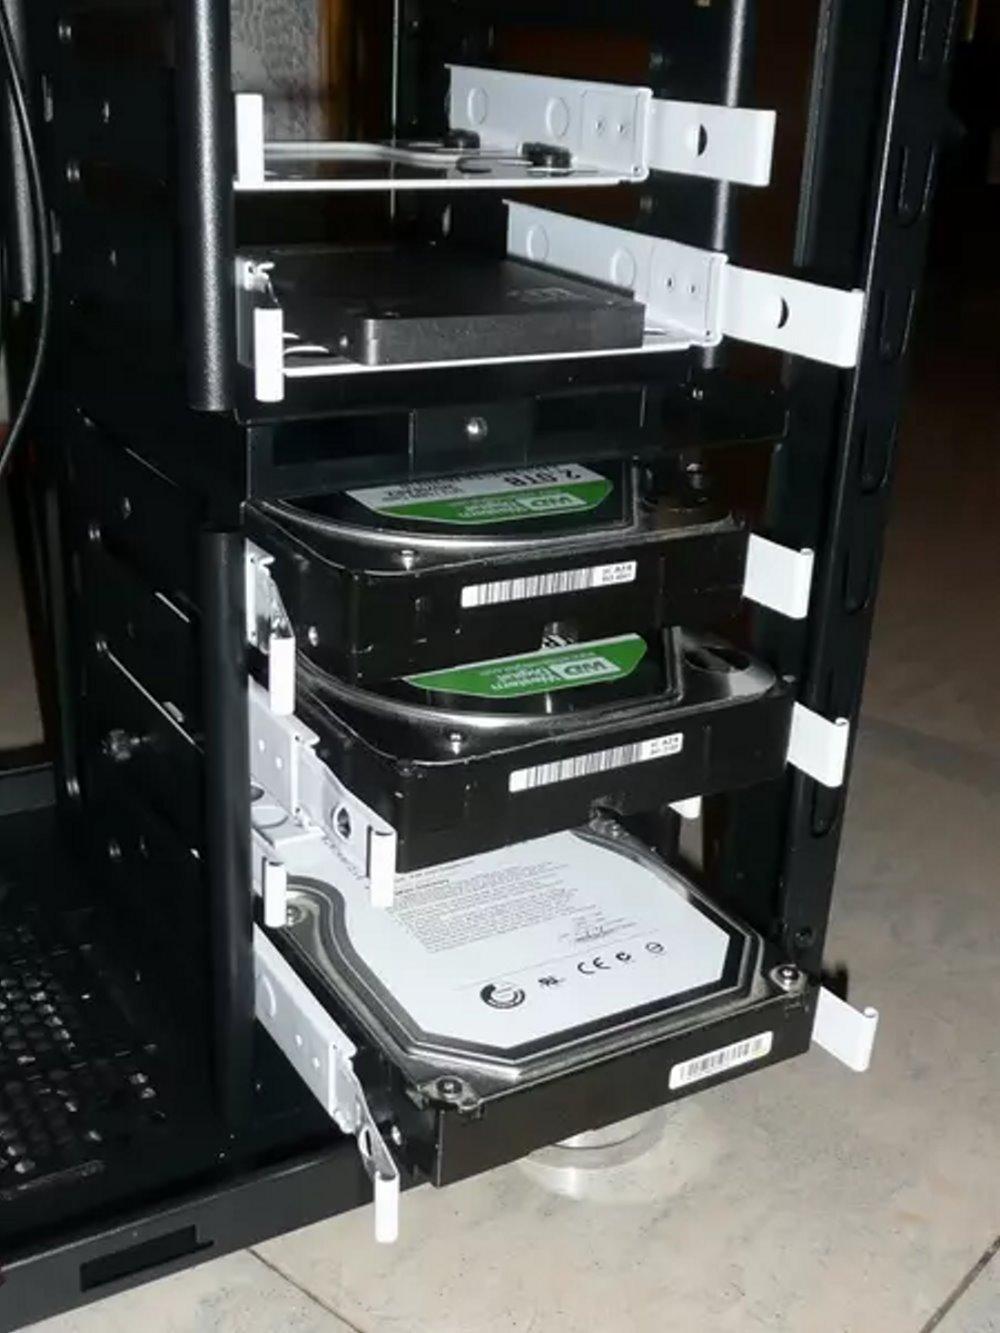 Muchas torres o chasis de PC tienen sistemas para instalar un disco duro de maenra sencilla y sin tornilleria